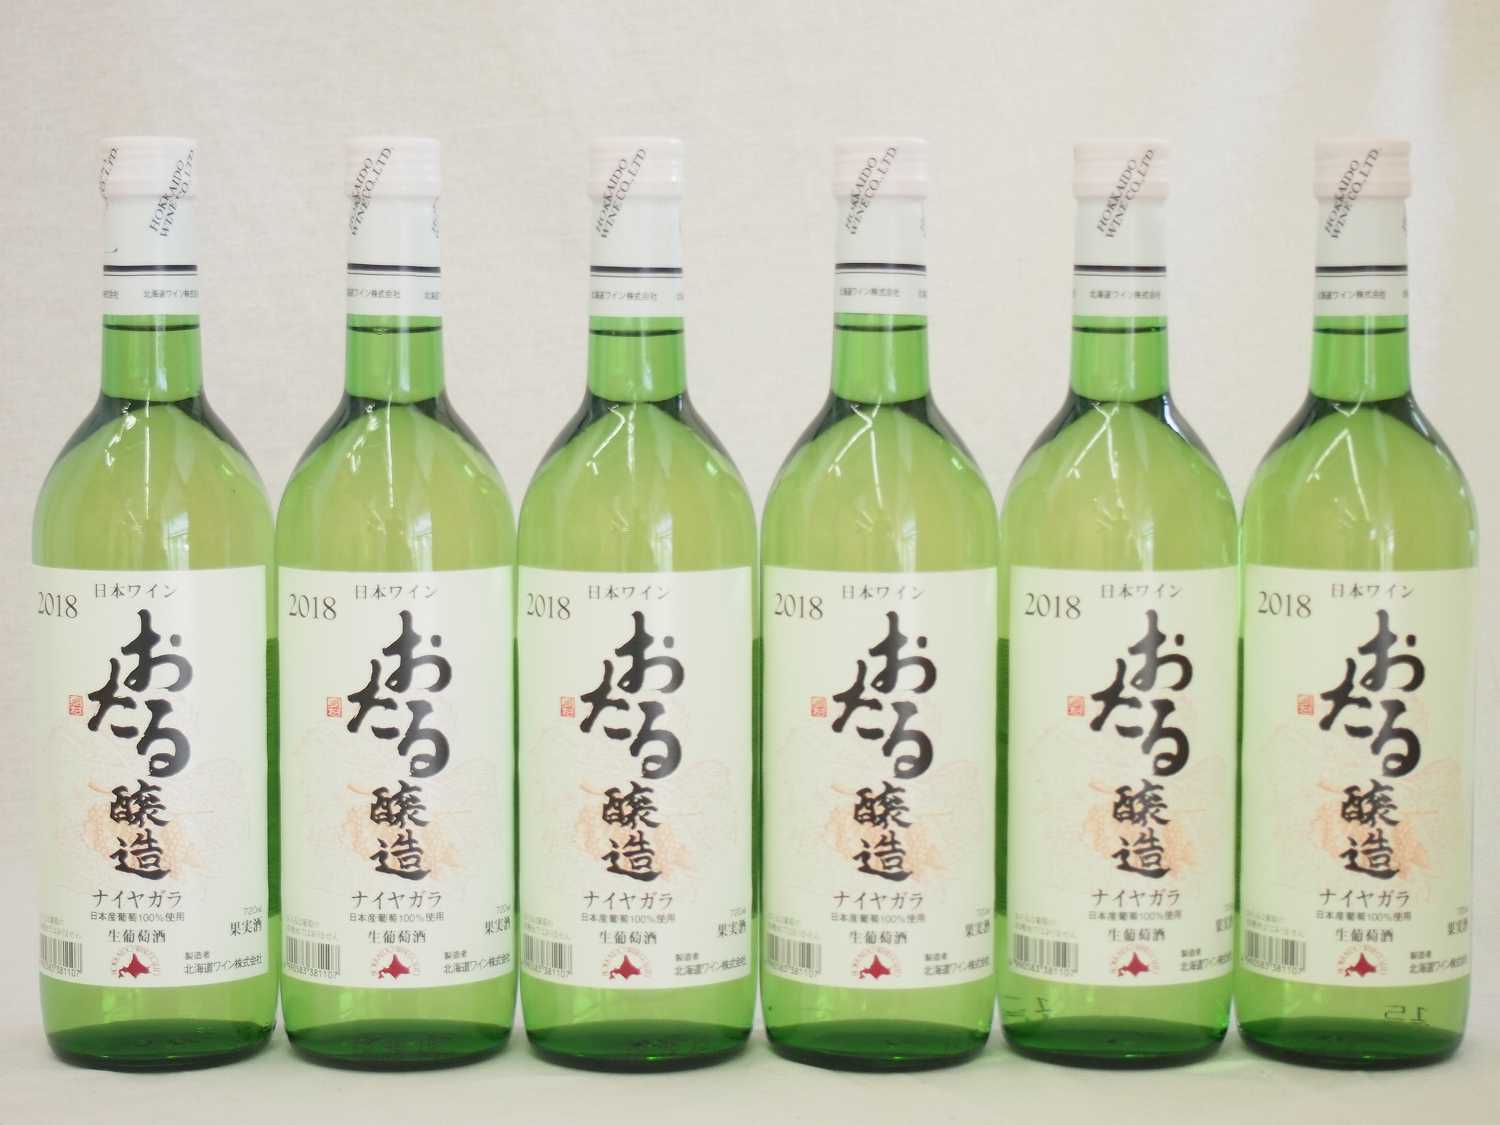 日本ワイン おたる醸造 ナイアガラ 日本産葡萄100% 白 やや甘口 (北海道)720ml×6本